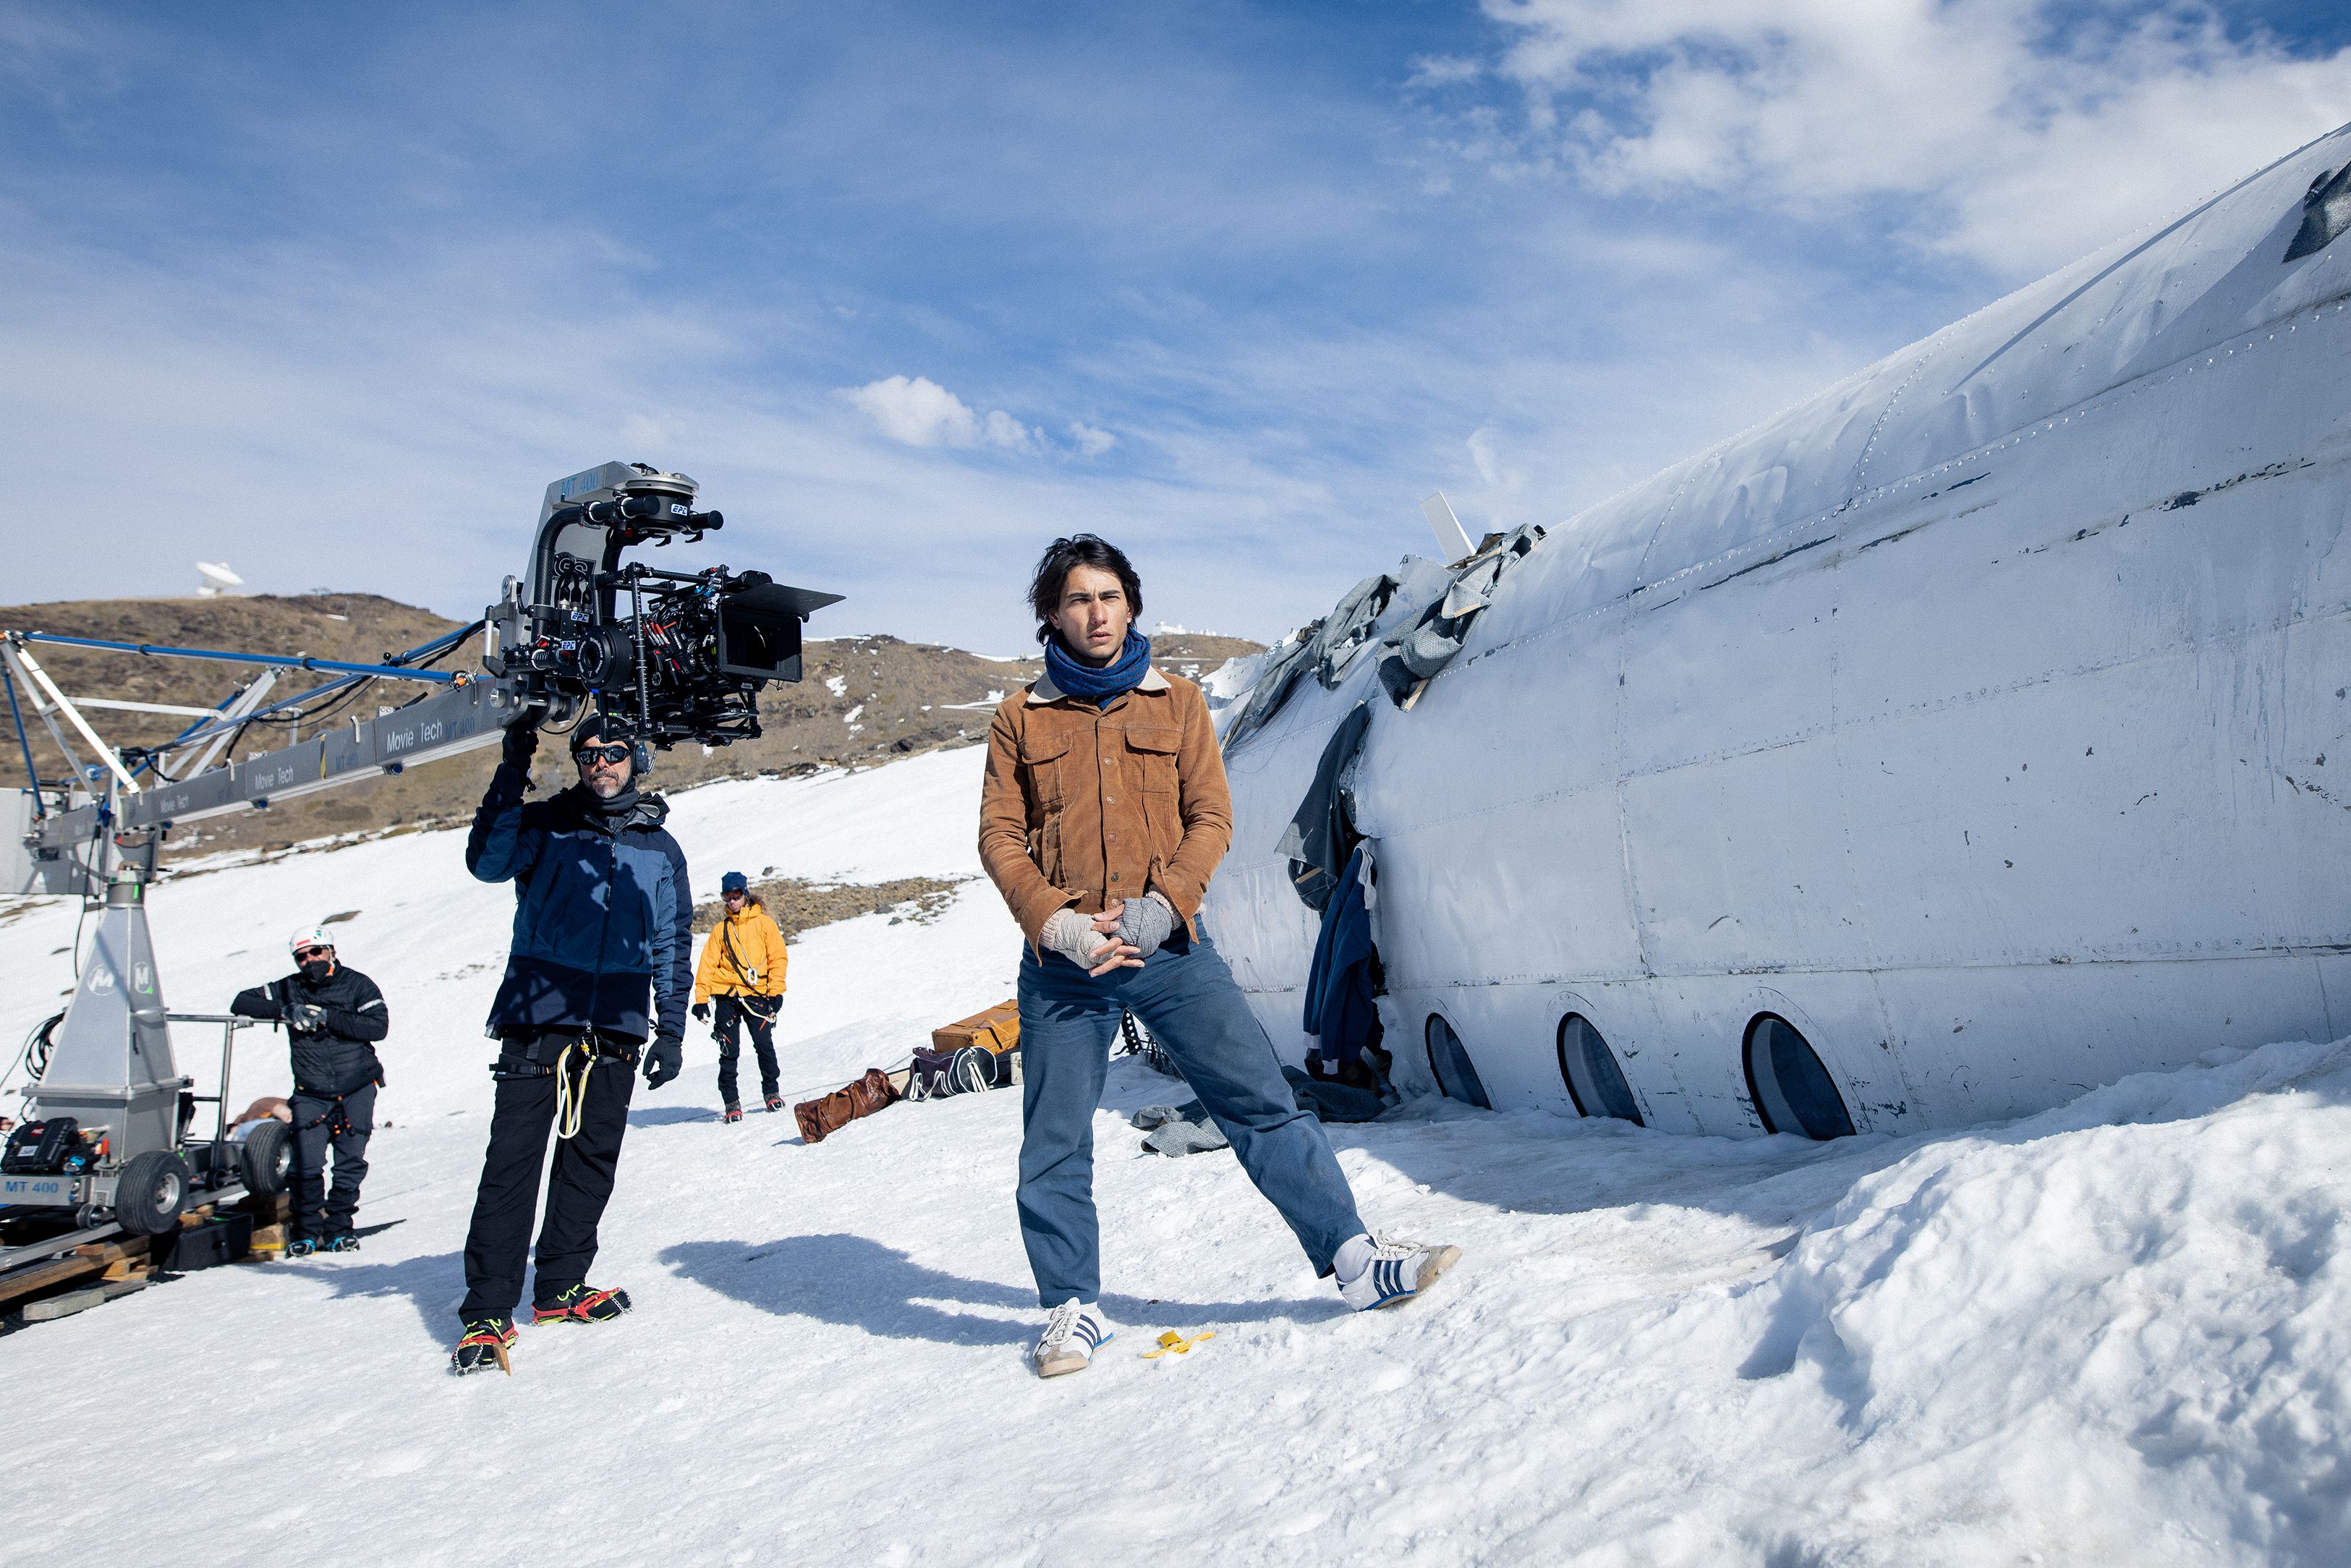 La realidad de 'La sociedad de la nieve' más allá de la película: Se  descartaron muchas cosas